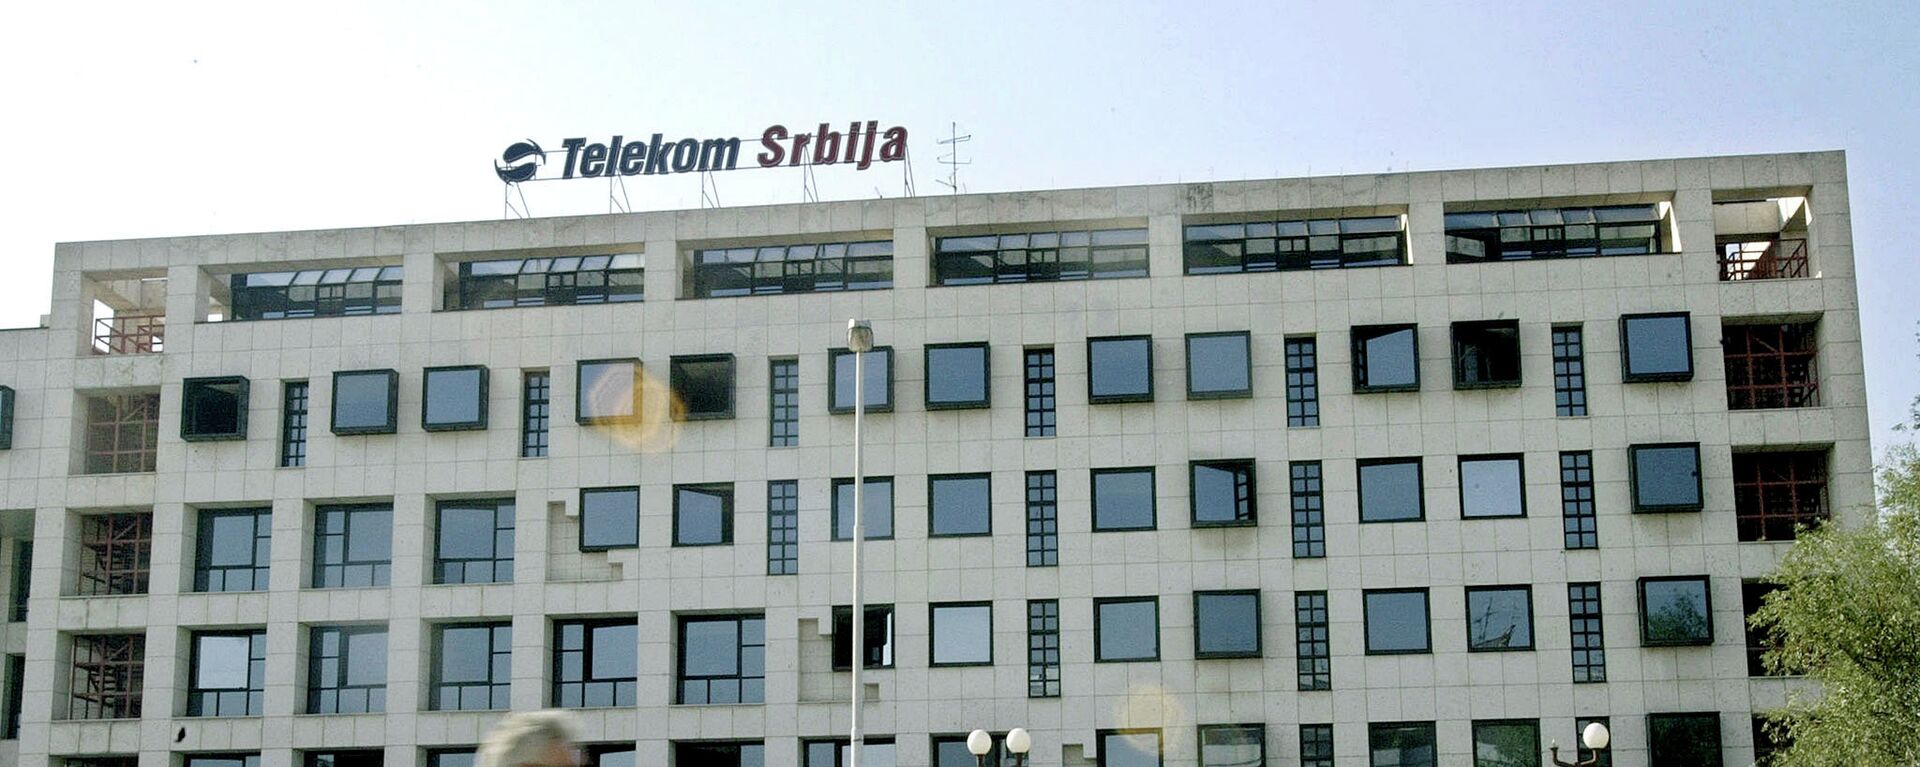 Telekom Srbija - Sputnik Srbija, 1920, 15.10.2021